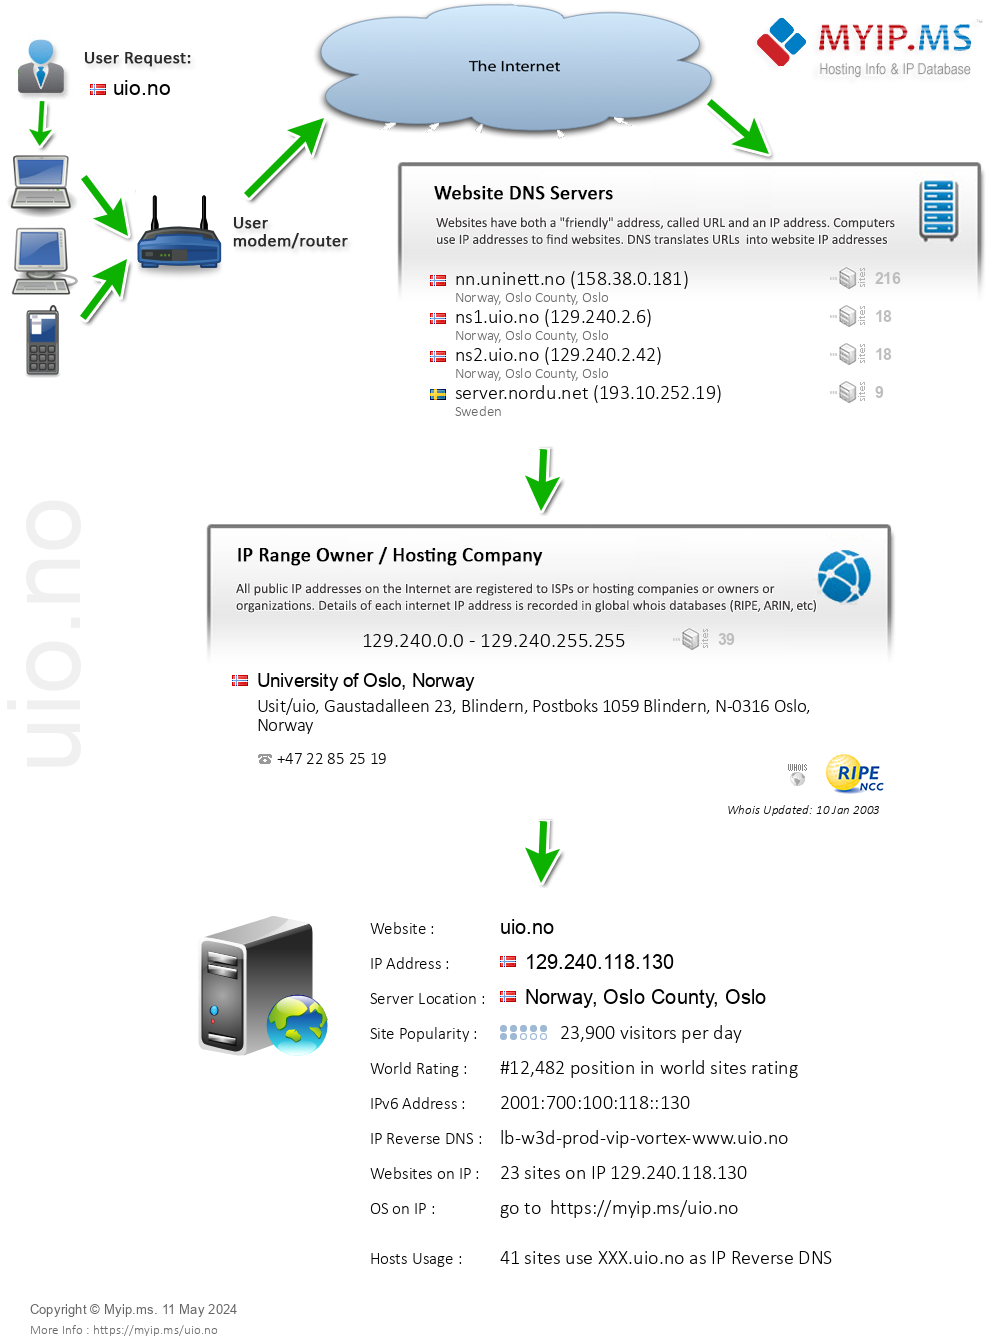 Uio.no - Website Hosting Visual IP Diagram